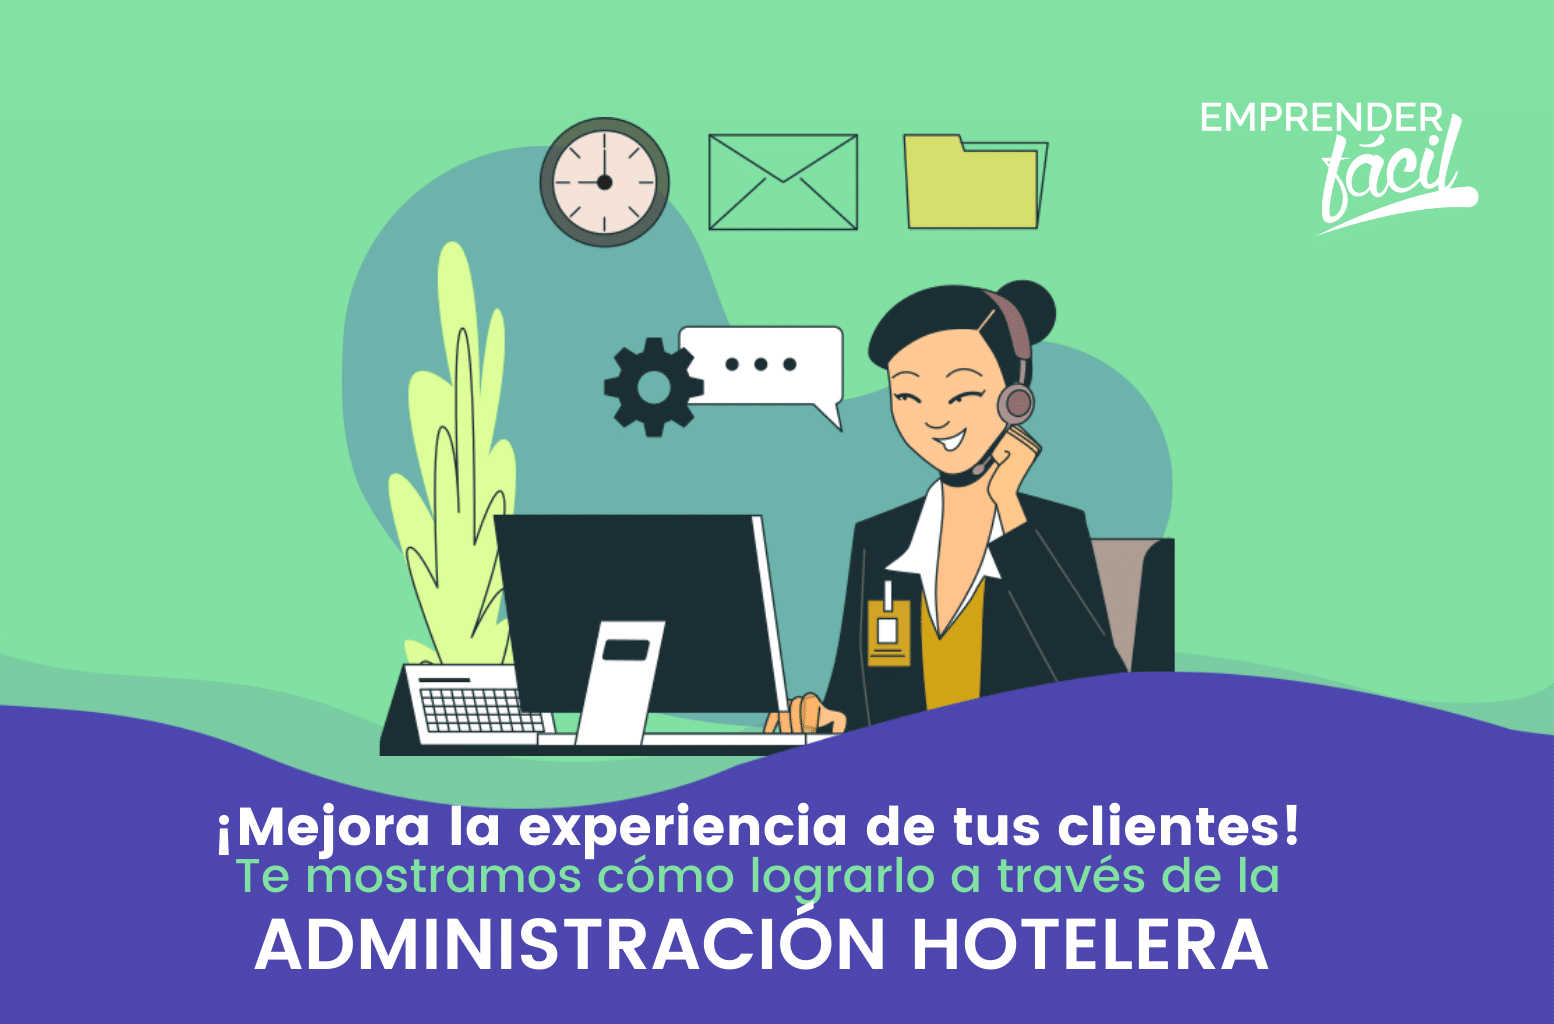 Administración Hotelera: Hacia la satisfacción del cliente